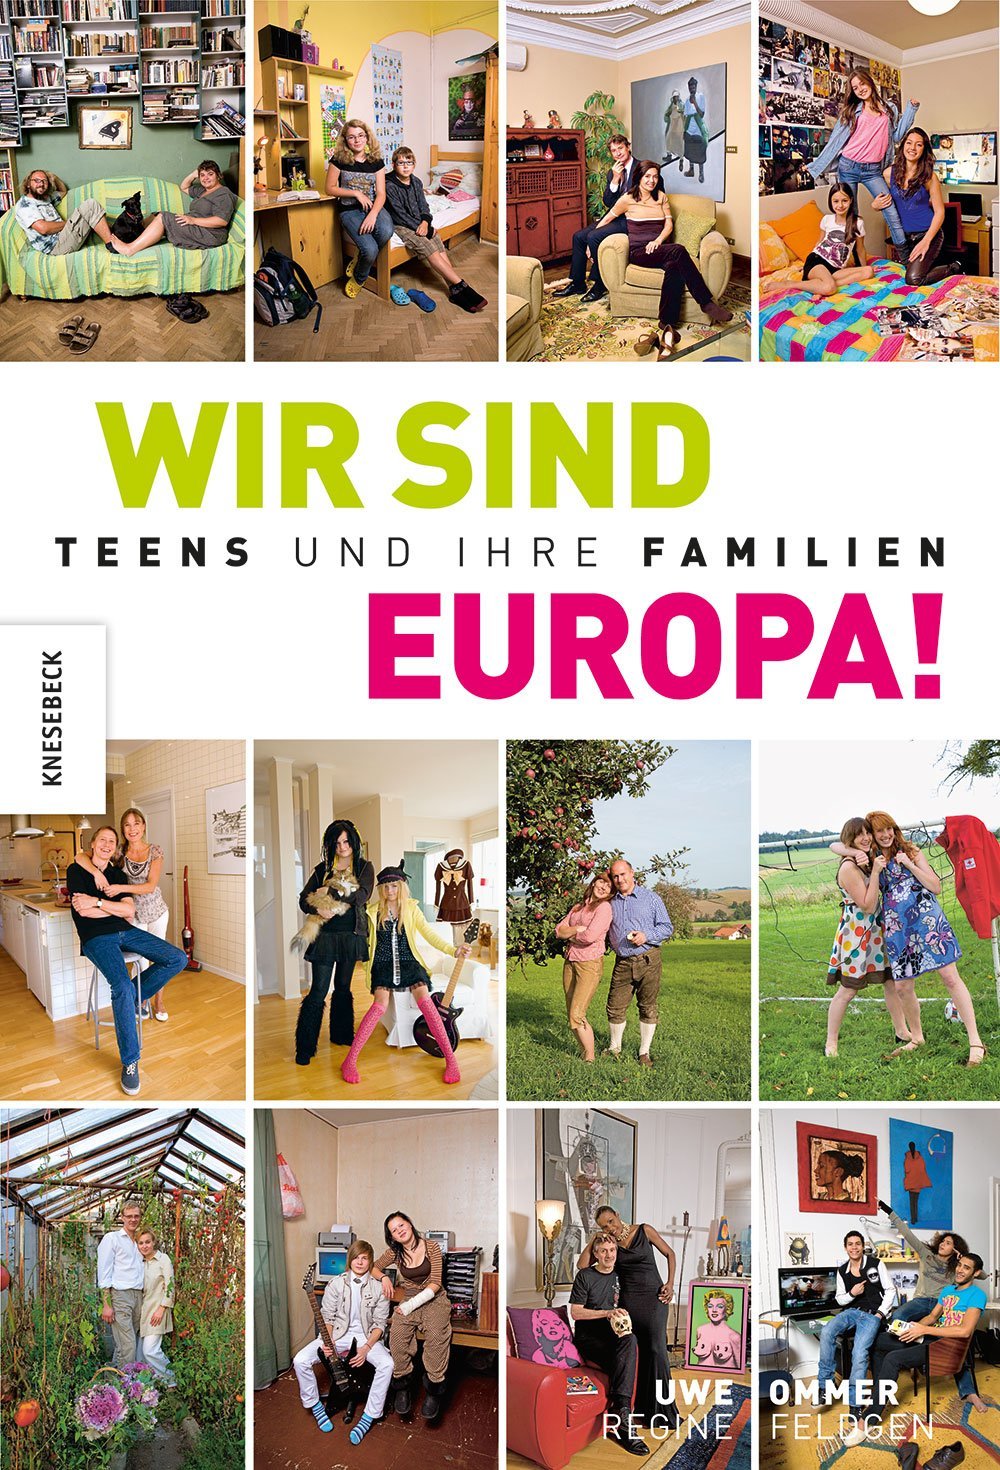 Couchtisch-Buch für Teens: Wir sind Europa! © Amazon.de